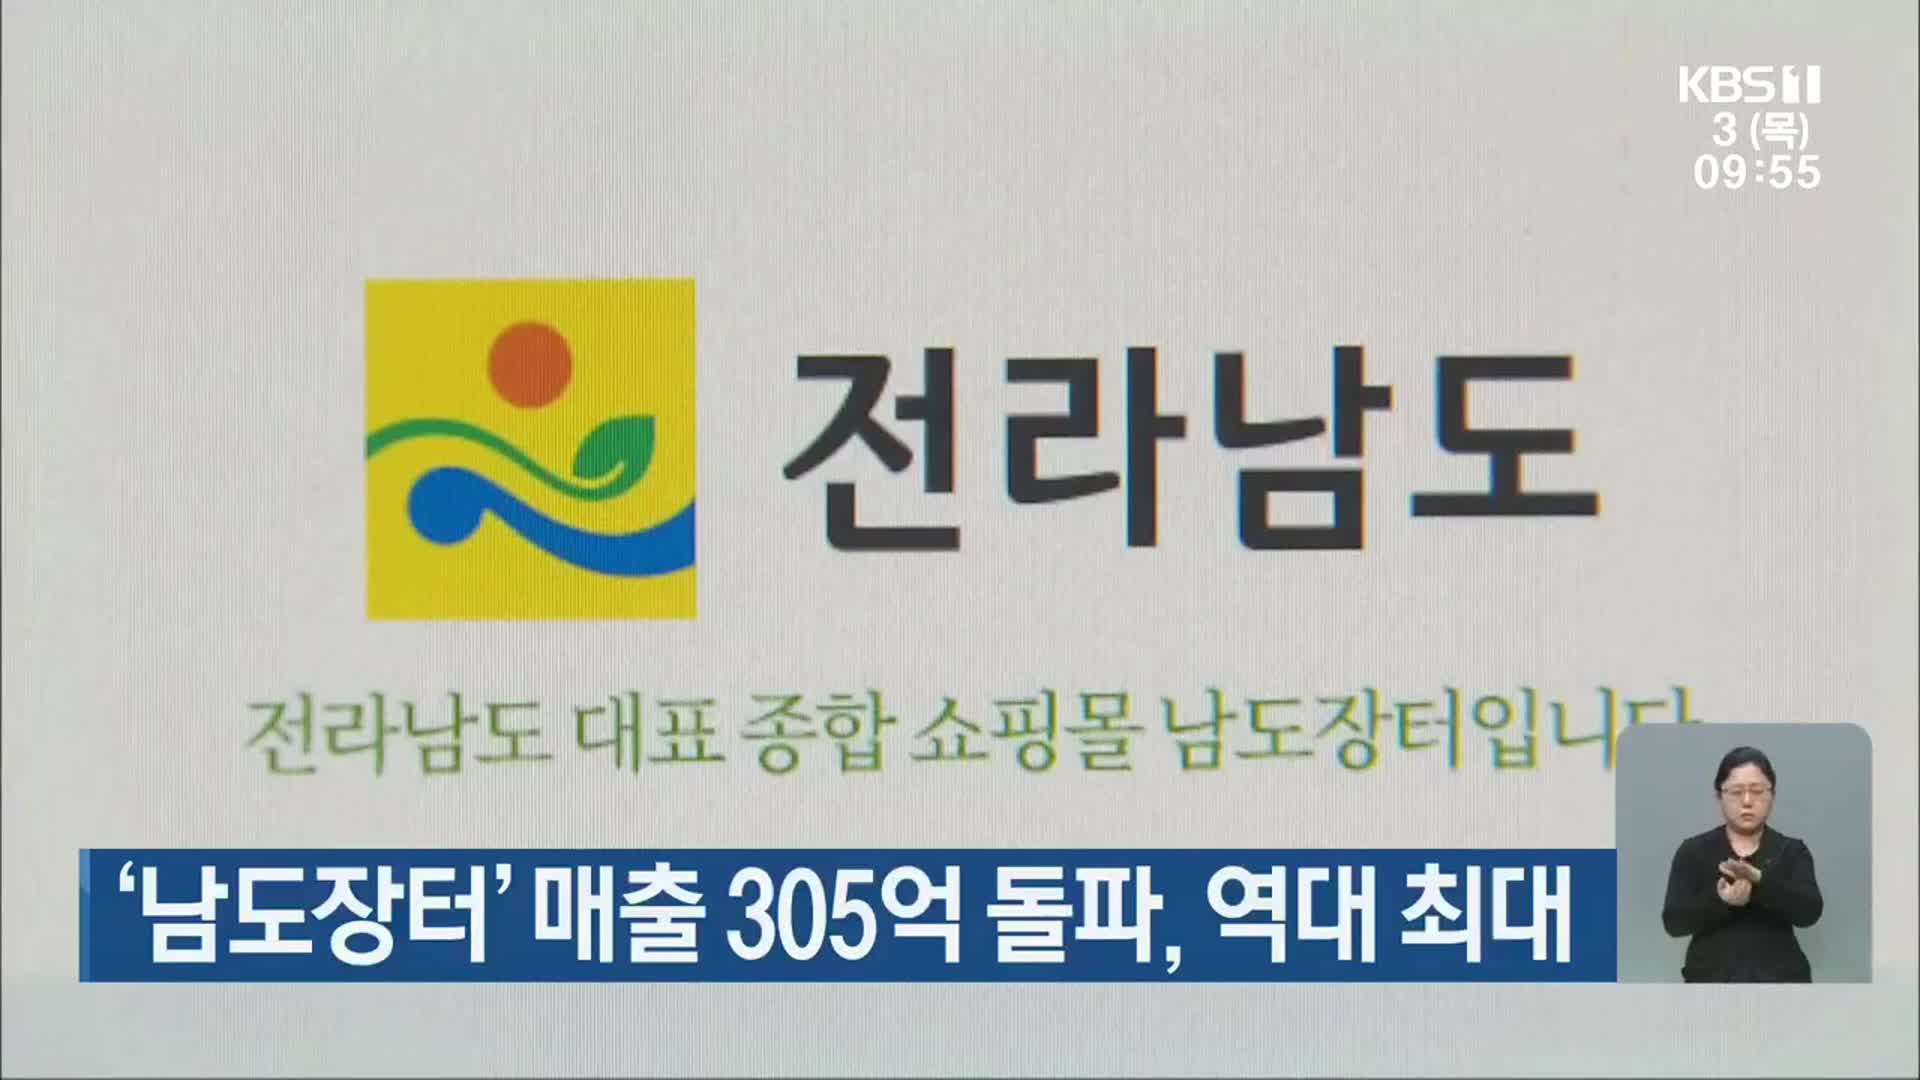 ‘남도장터’ 매출 305억 돌파, 역대 최대